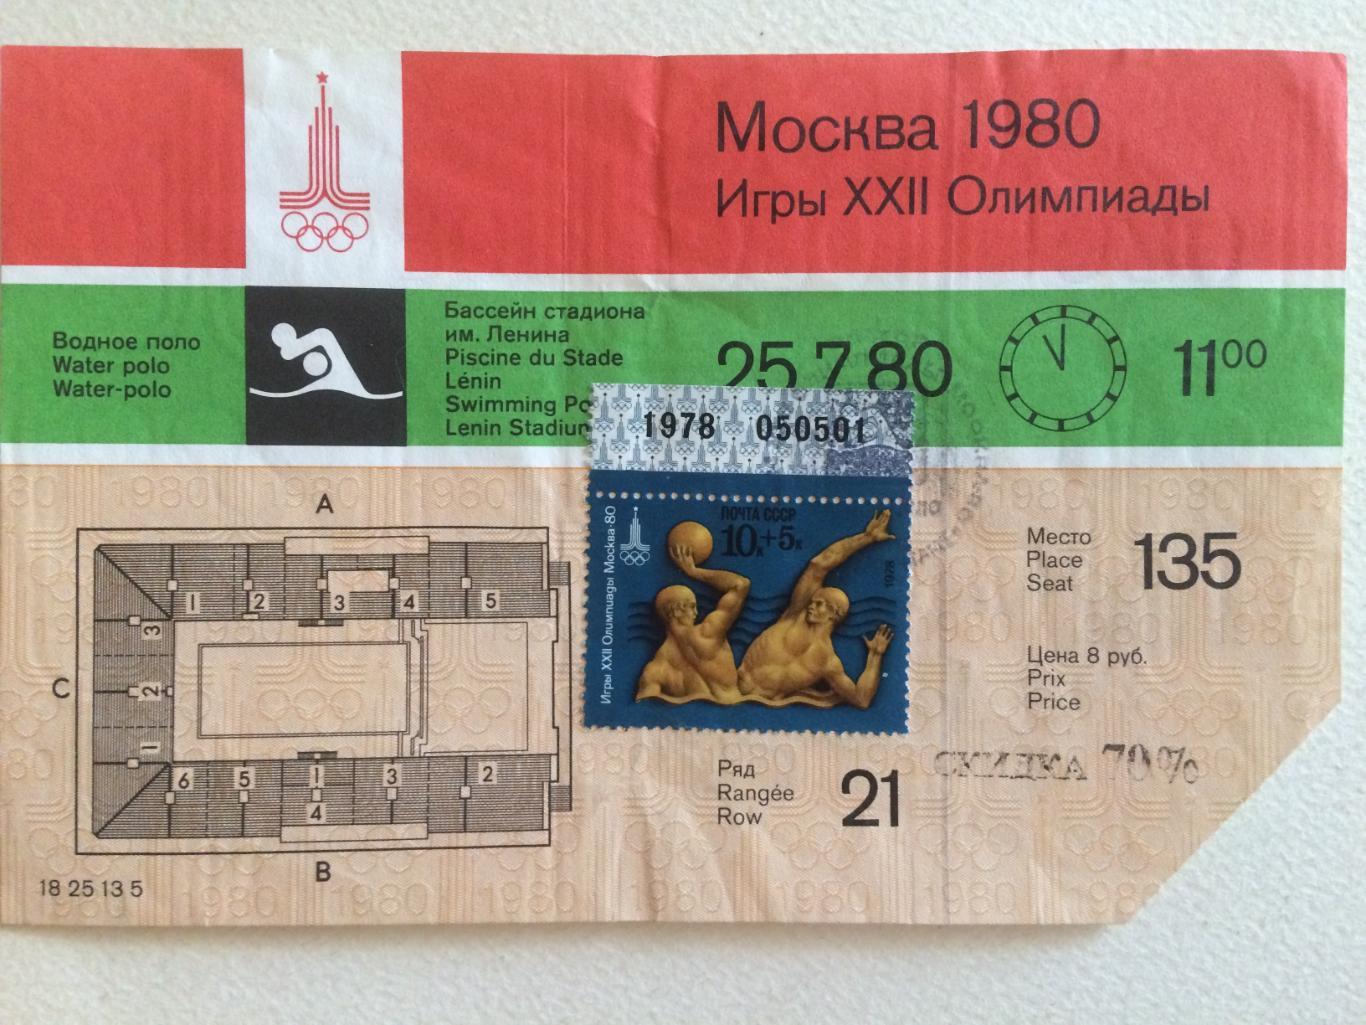 Олимпиада 1980.Водное поло 25.07. Билет.Москва-80